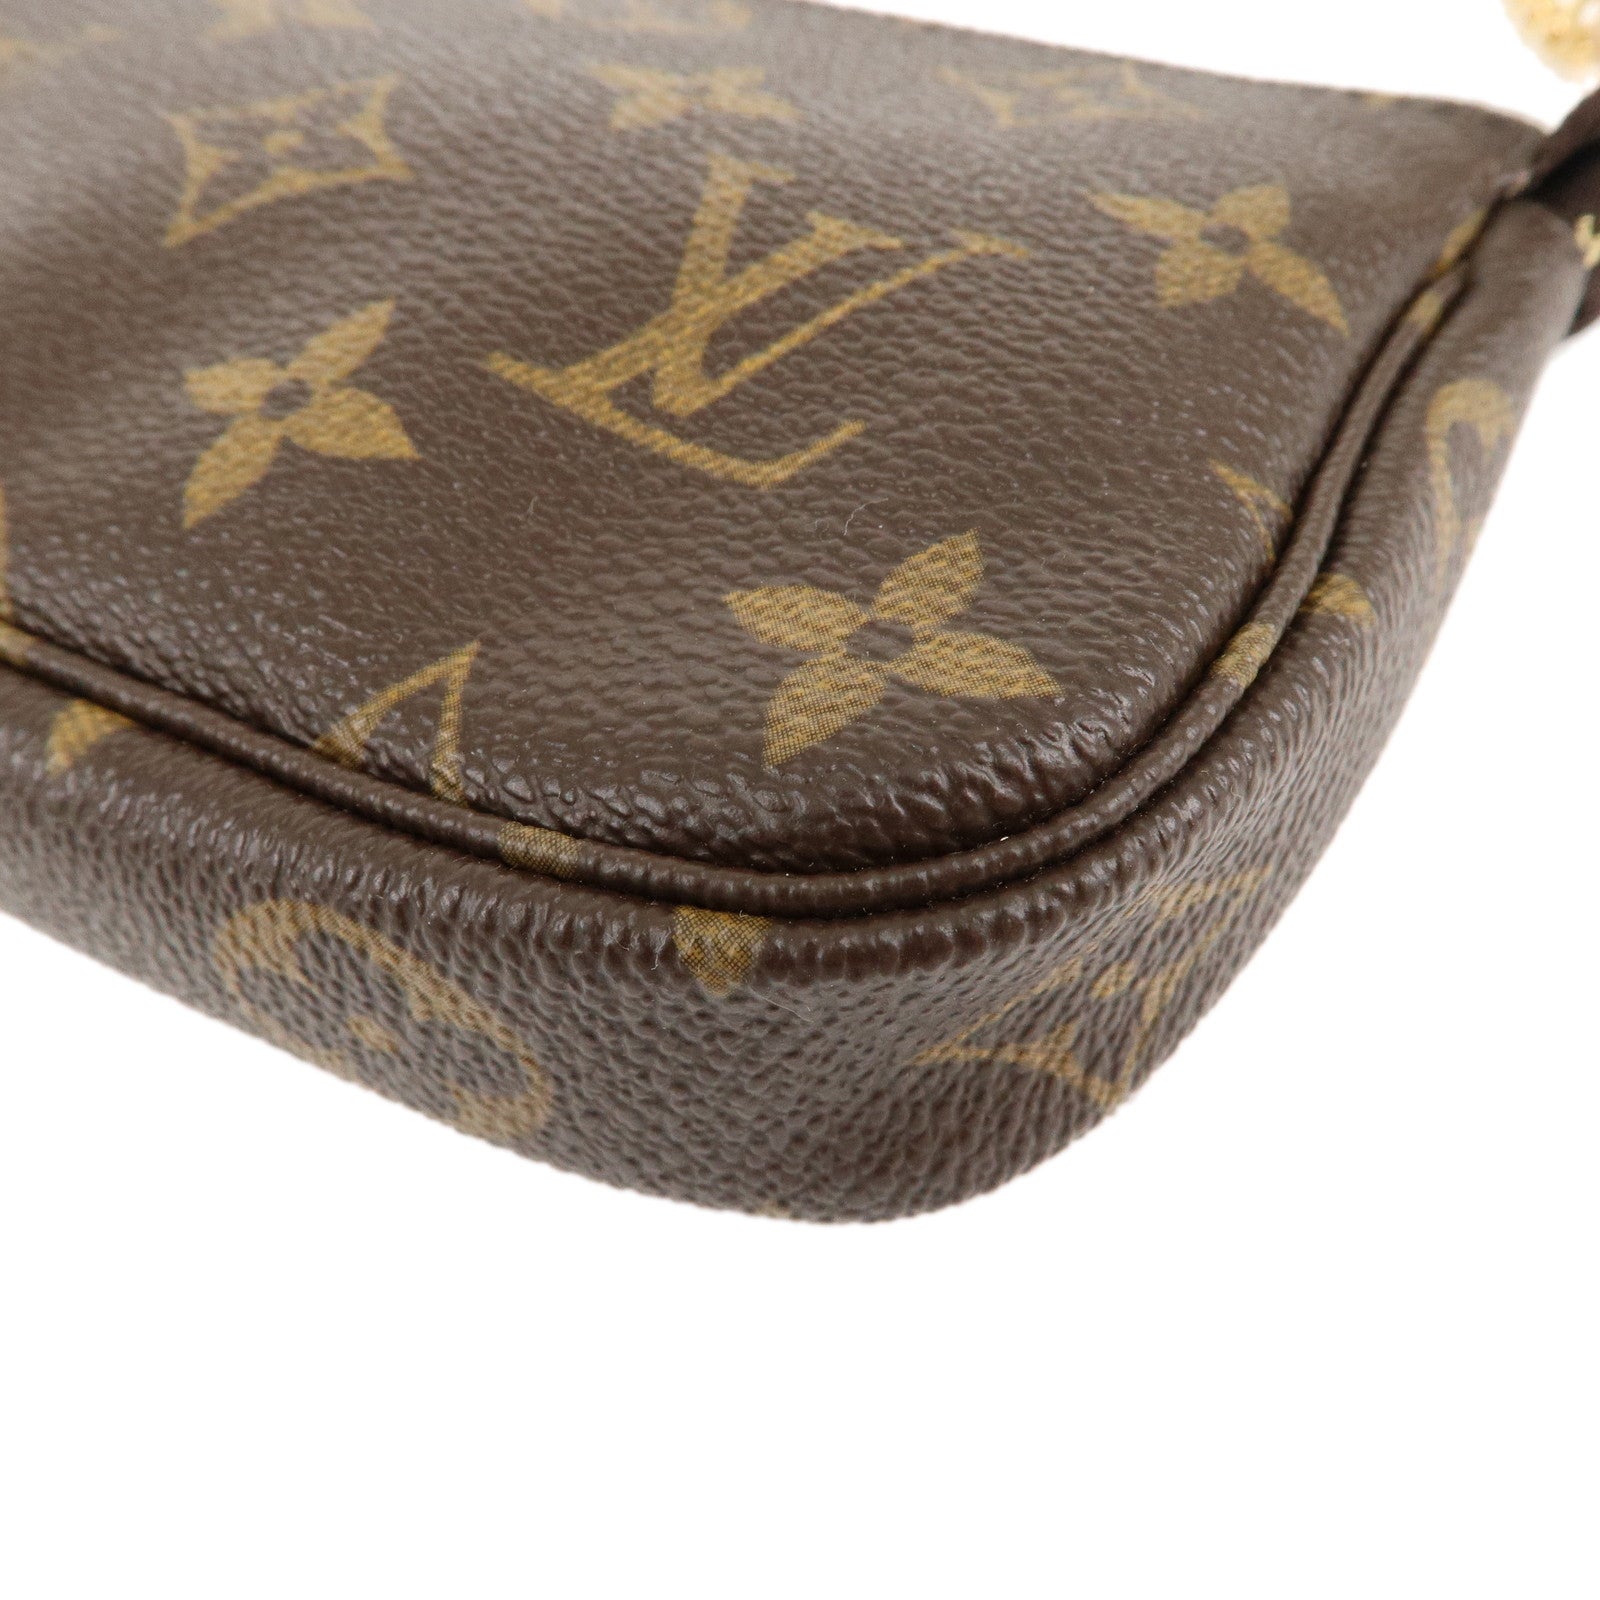 Louis Vuitton M58009 Mini Pochette Accessoires Monogram Women's Bags &  Handbags